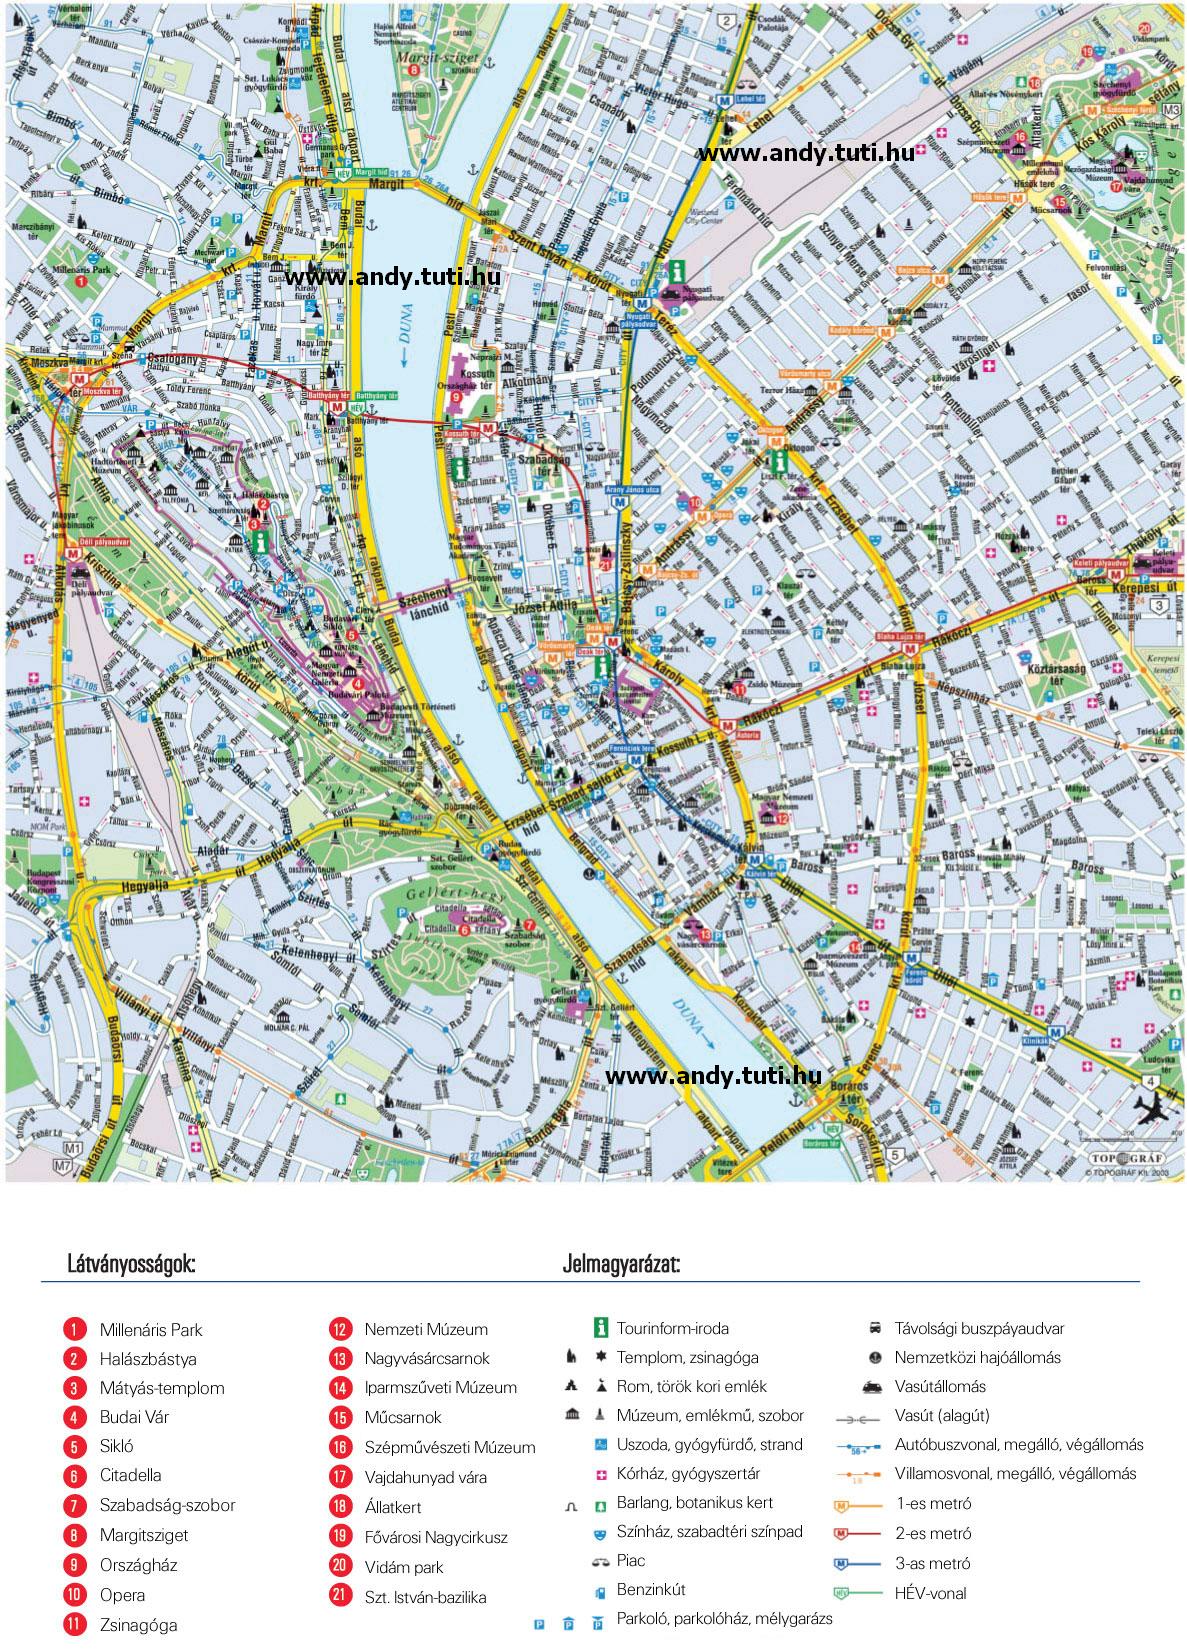 bp térkép nyomtatható Letölthető térképek :::::: Powered by: .webtar.hu ::::::* bp térkép nyomtatható